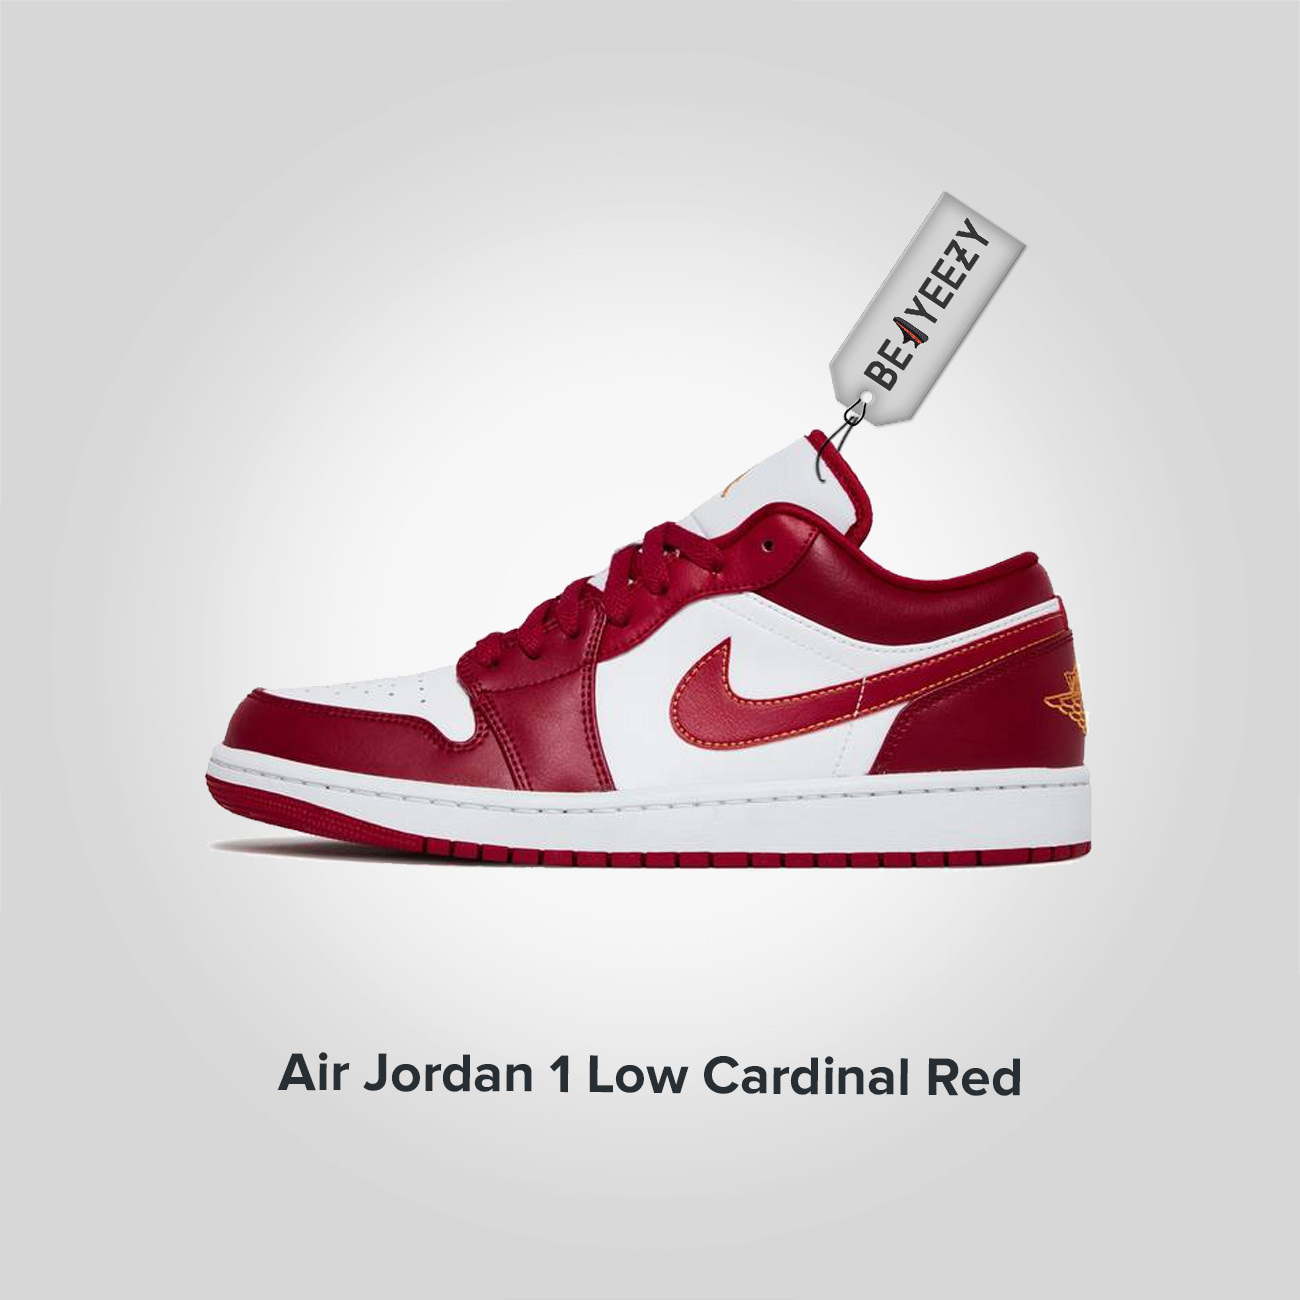 Jordan 1 Low Cardinal Red